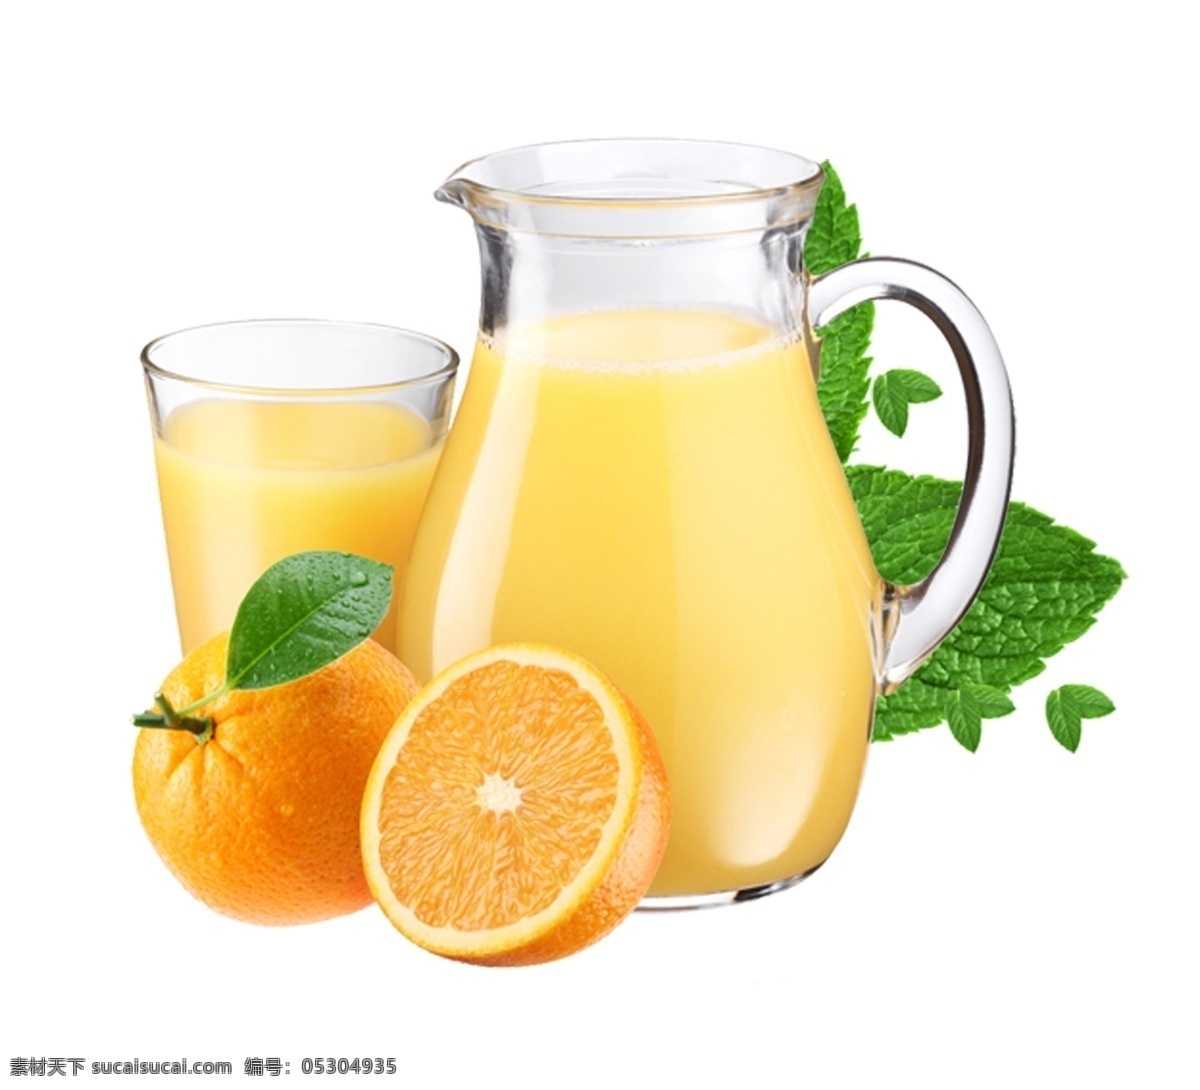 大杯 橙汁 元素 果汁 橙子 饮料 水果 新鲜水果 健康饮品 绿色叶子 器皿 餐具厨具 实物摄影 容器 杯具 透明玻璃杯 夏日水果饮品 夏日水果饮